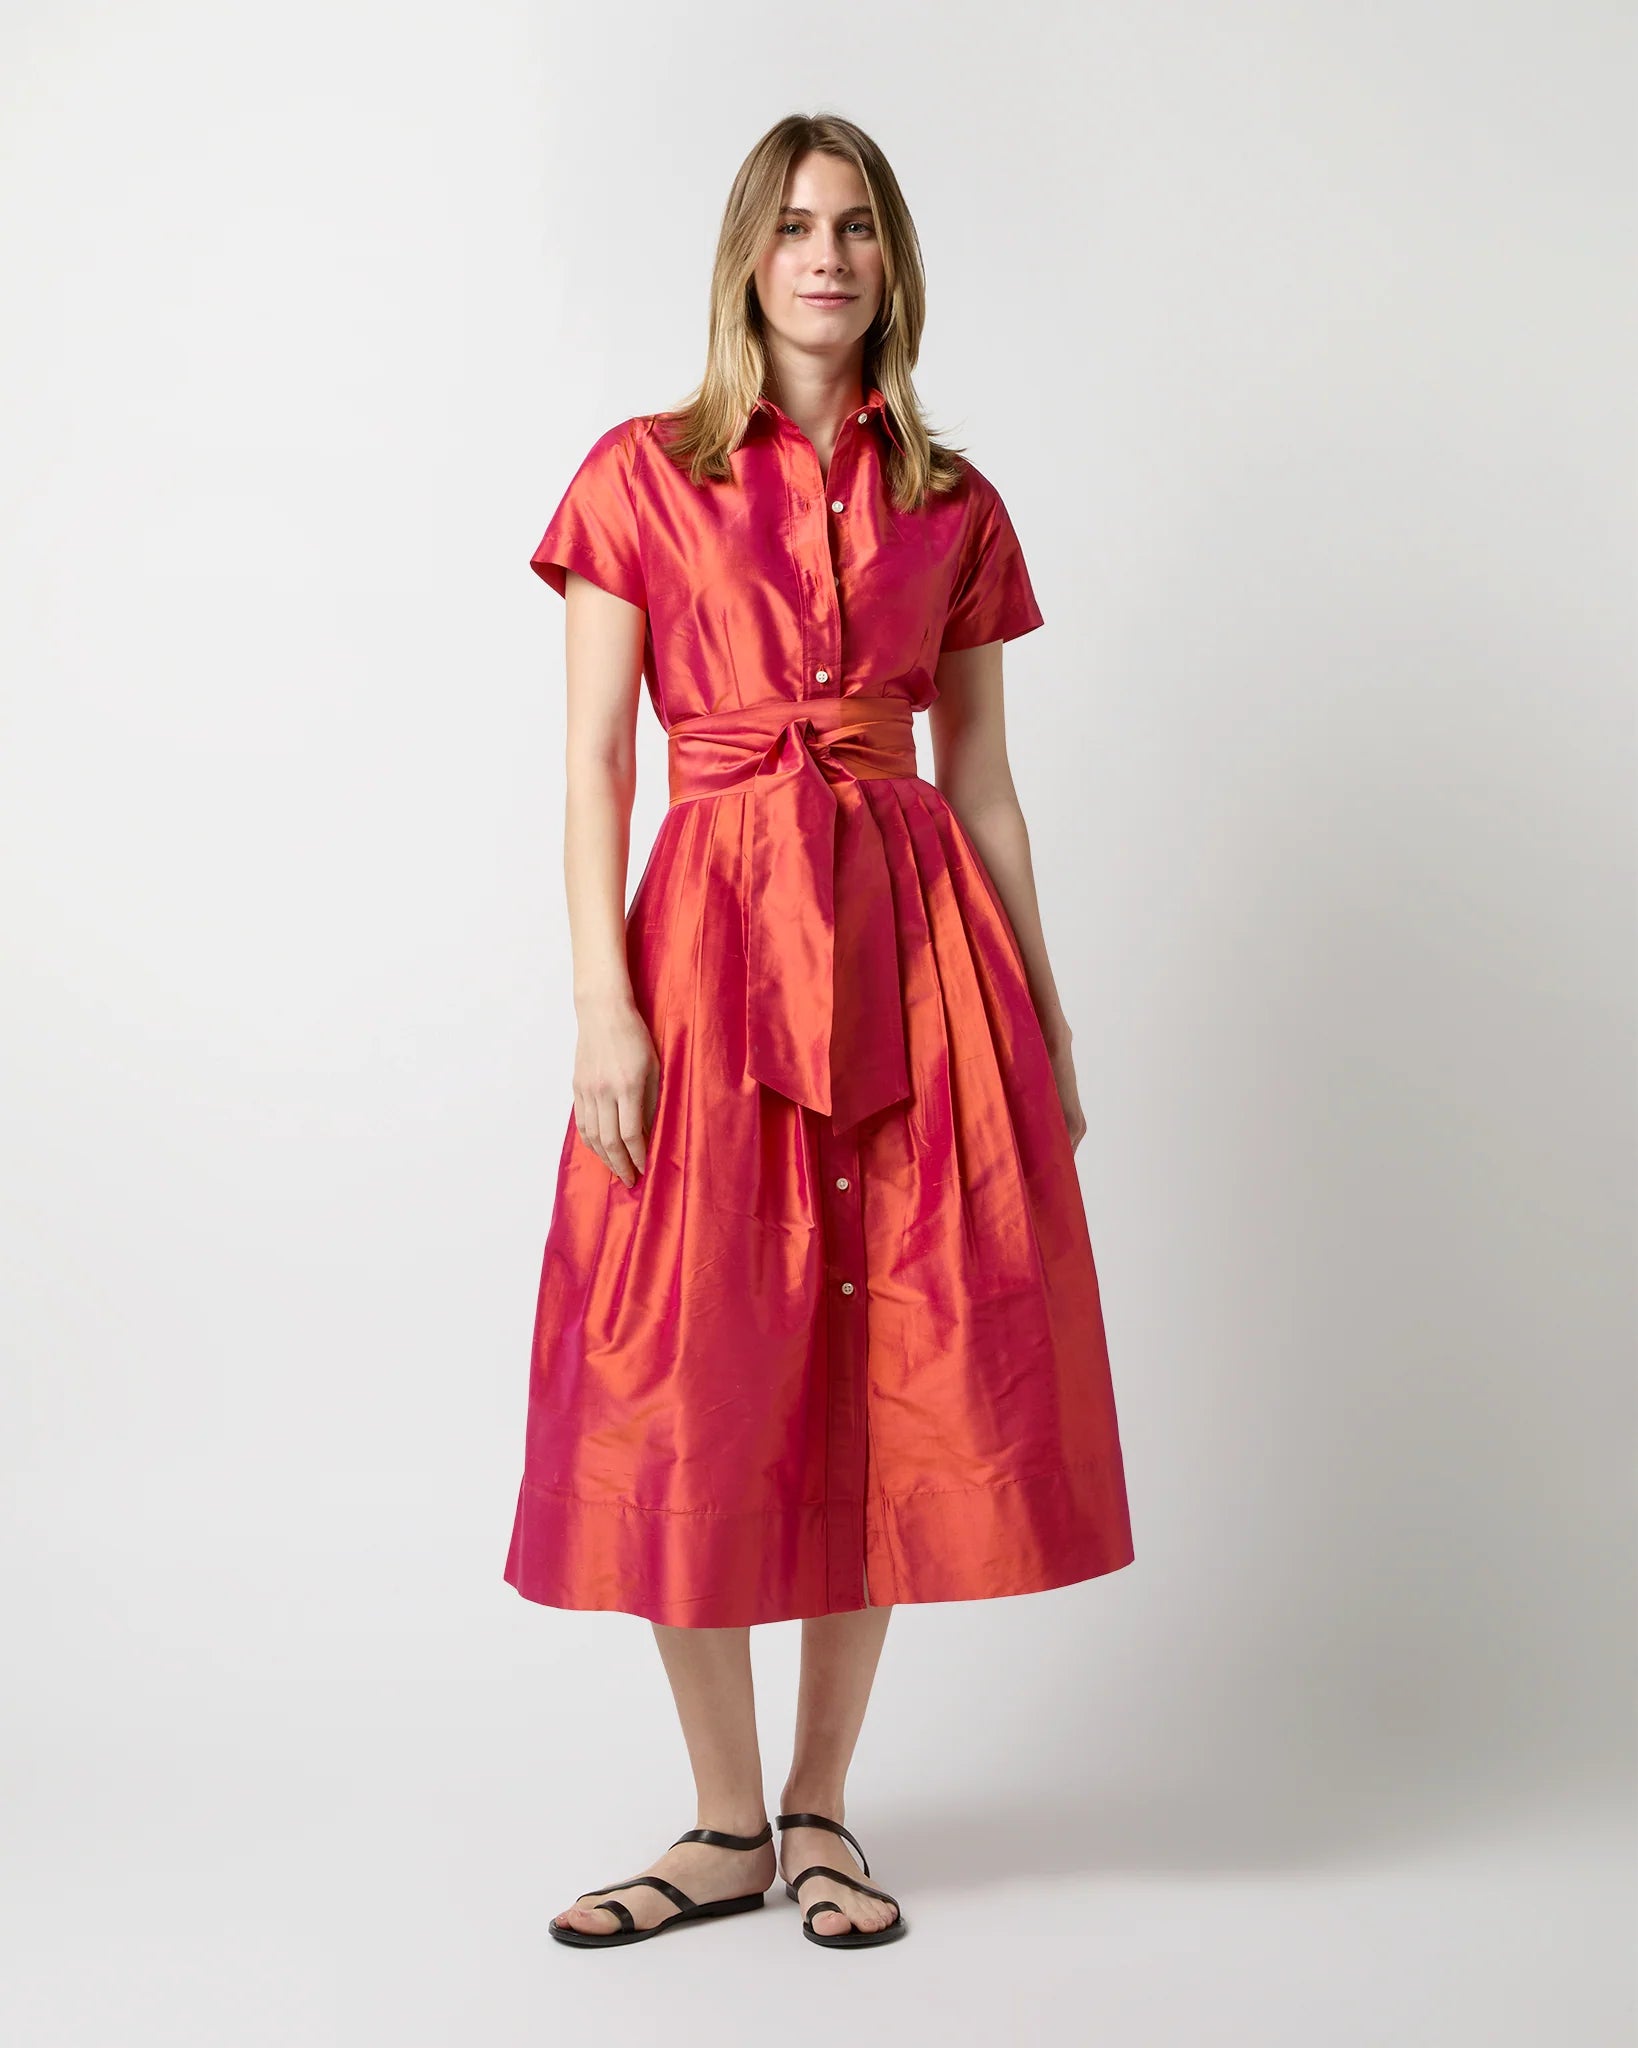 Ann Mashburn Short Sleeved Classic Shirtwaist Dress Iridescent Silk Shantung